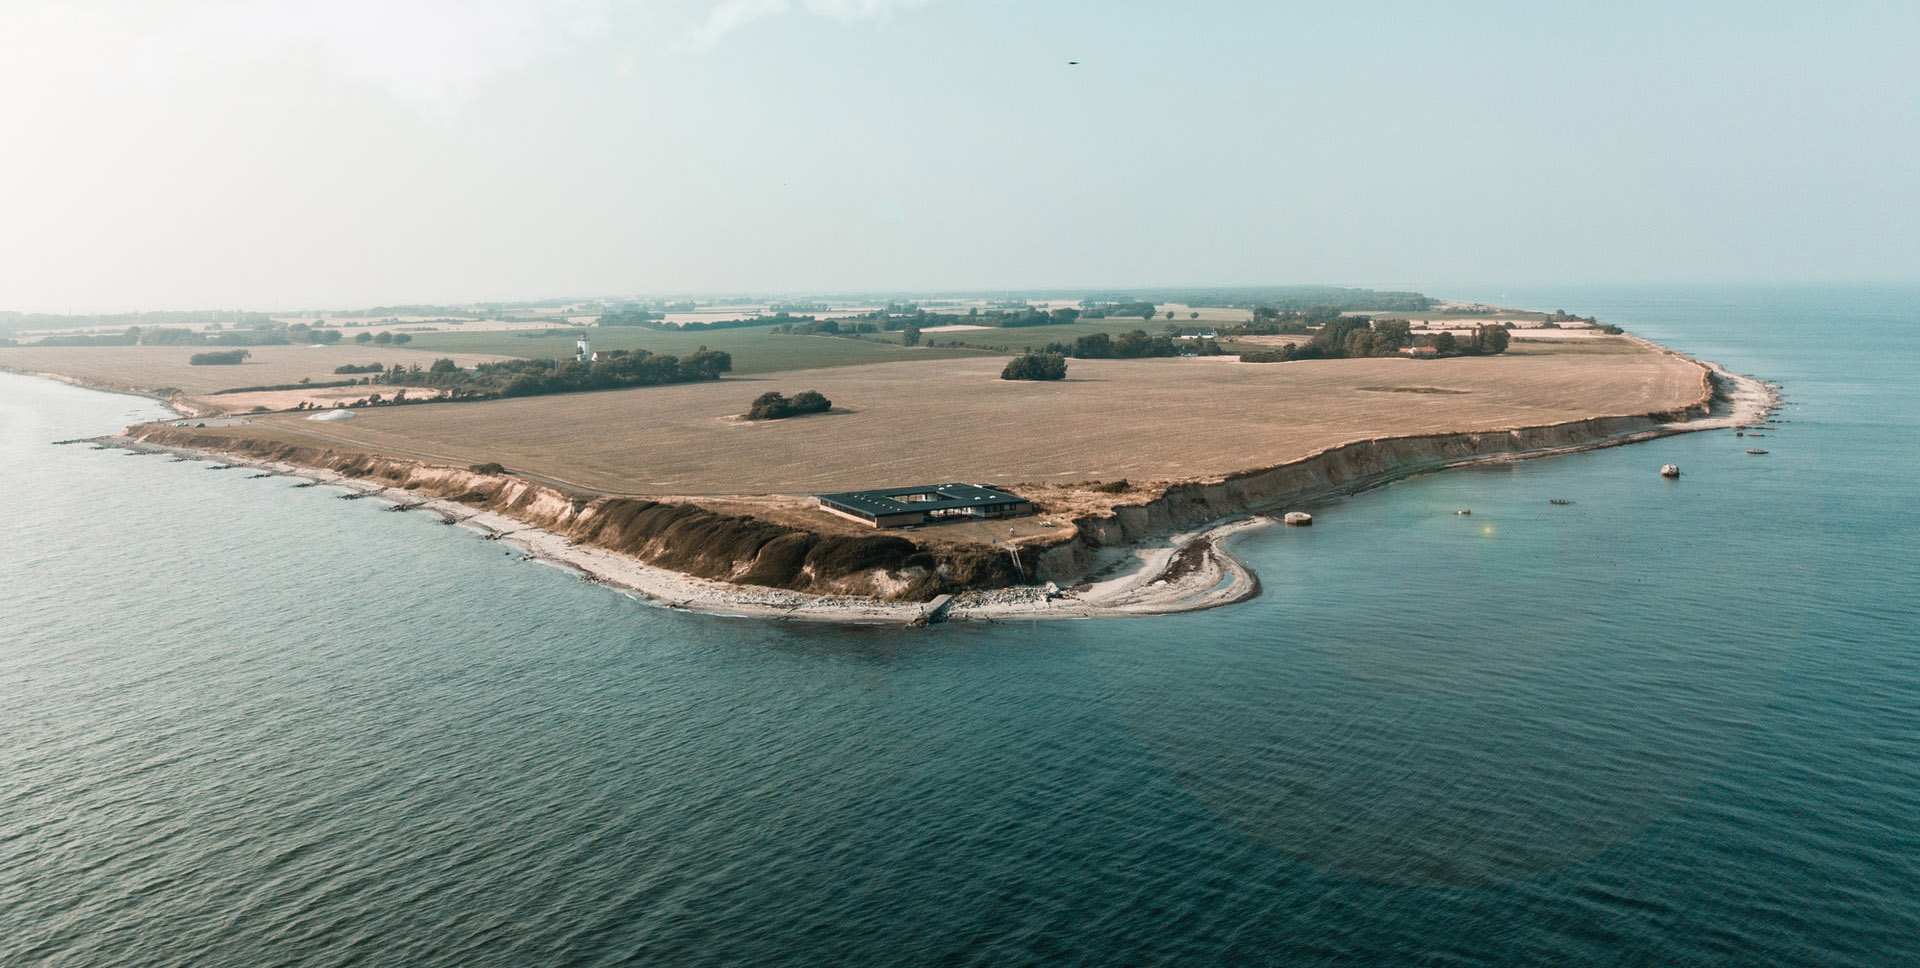 Najbardziej na południe wysunięta część Danii - Gedser Odde na wyspie Falster. Fot. Benjamin Blattler on Unsplash.